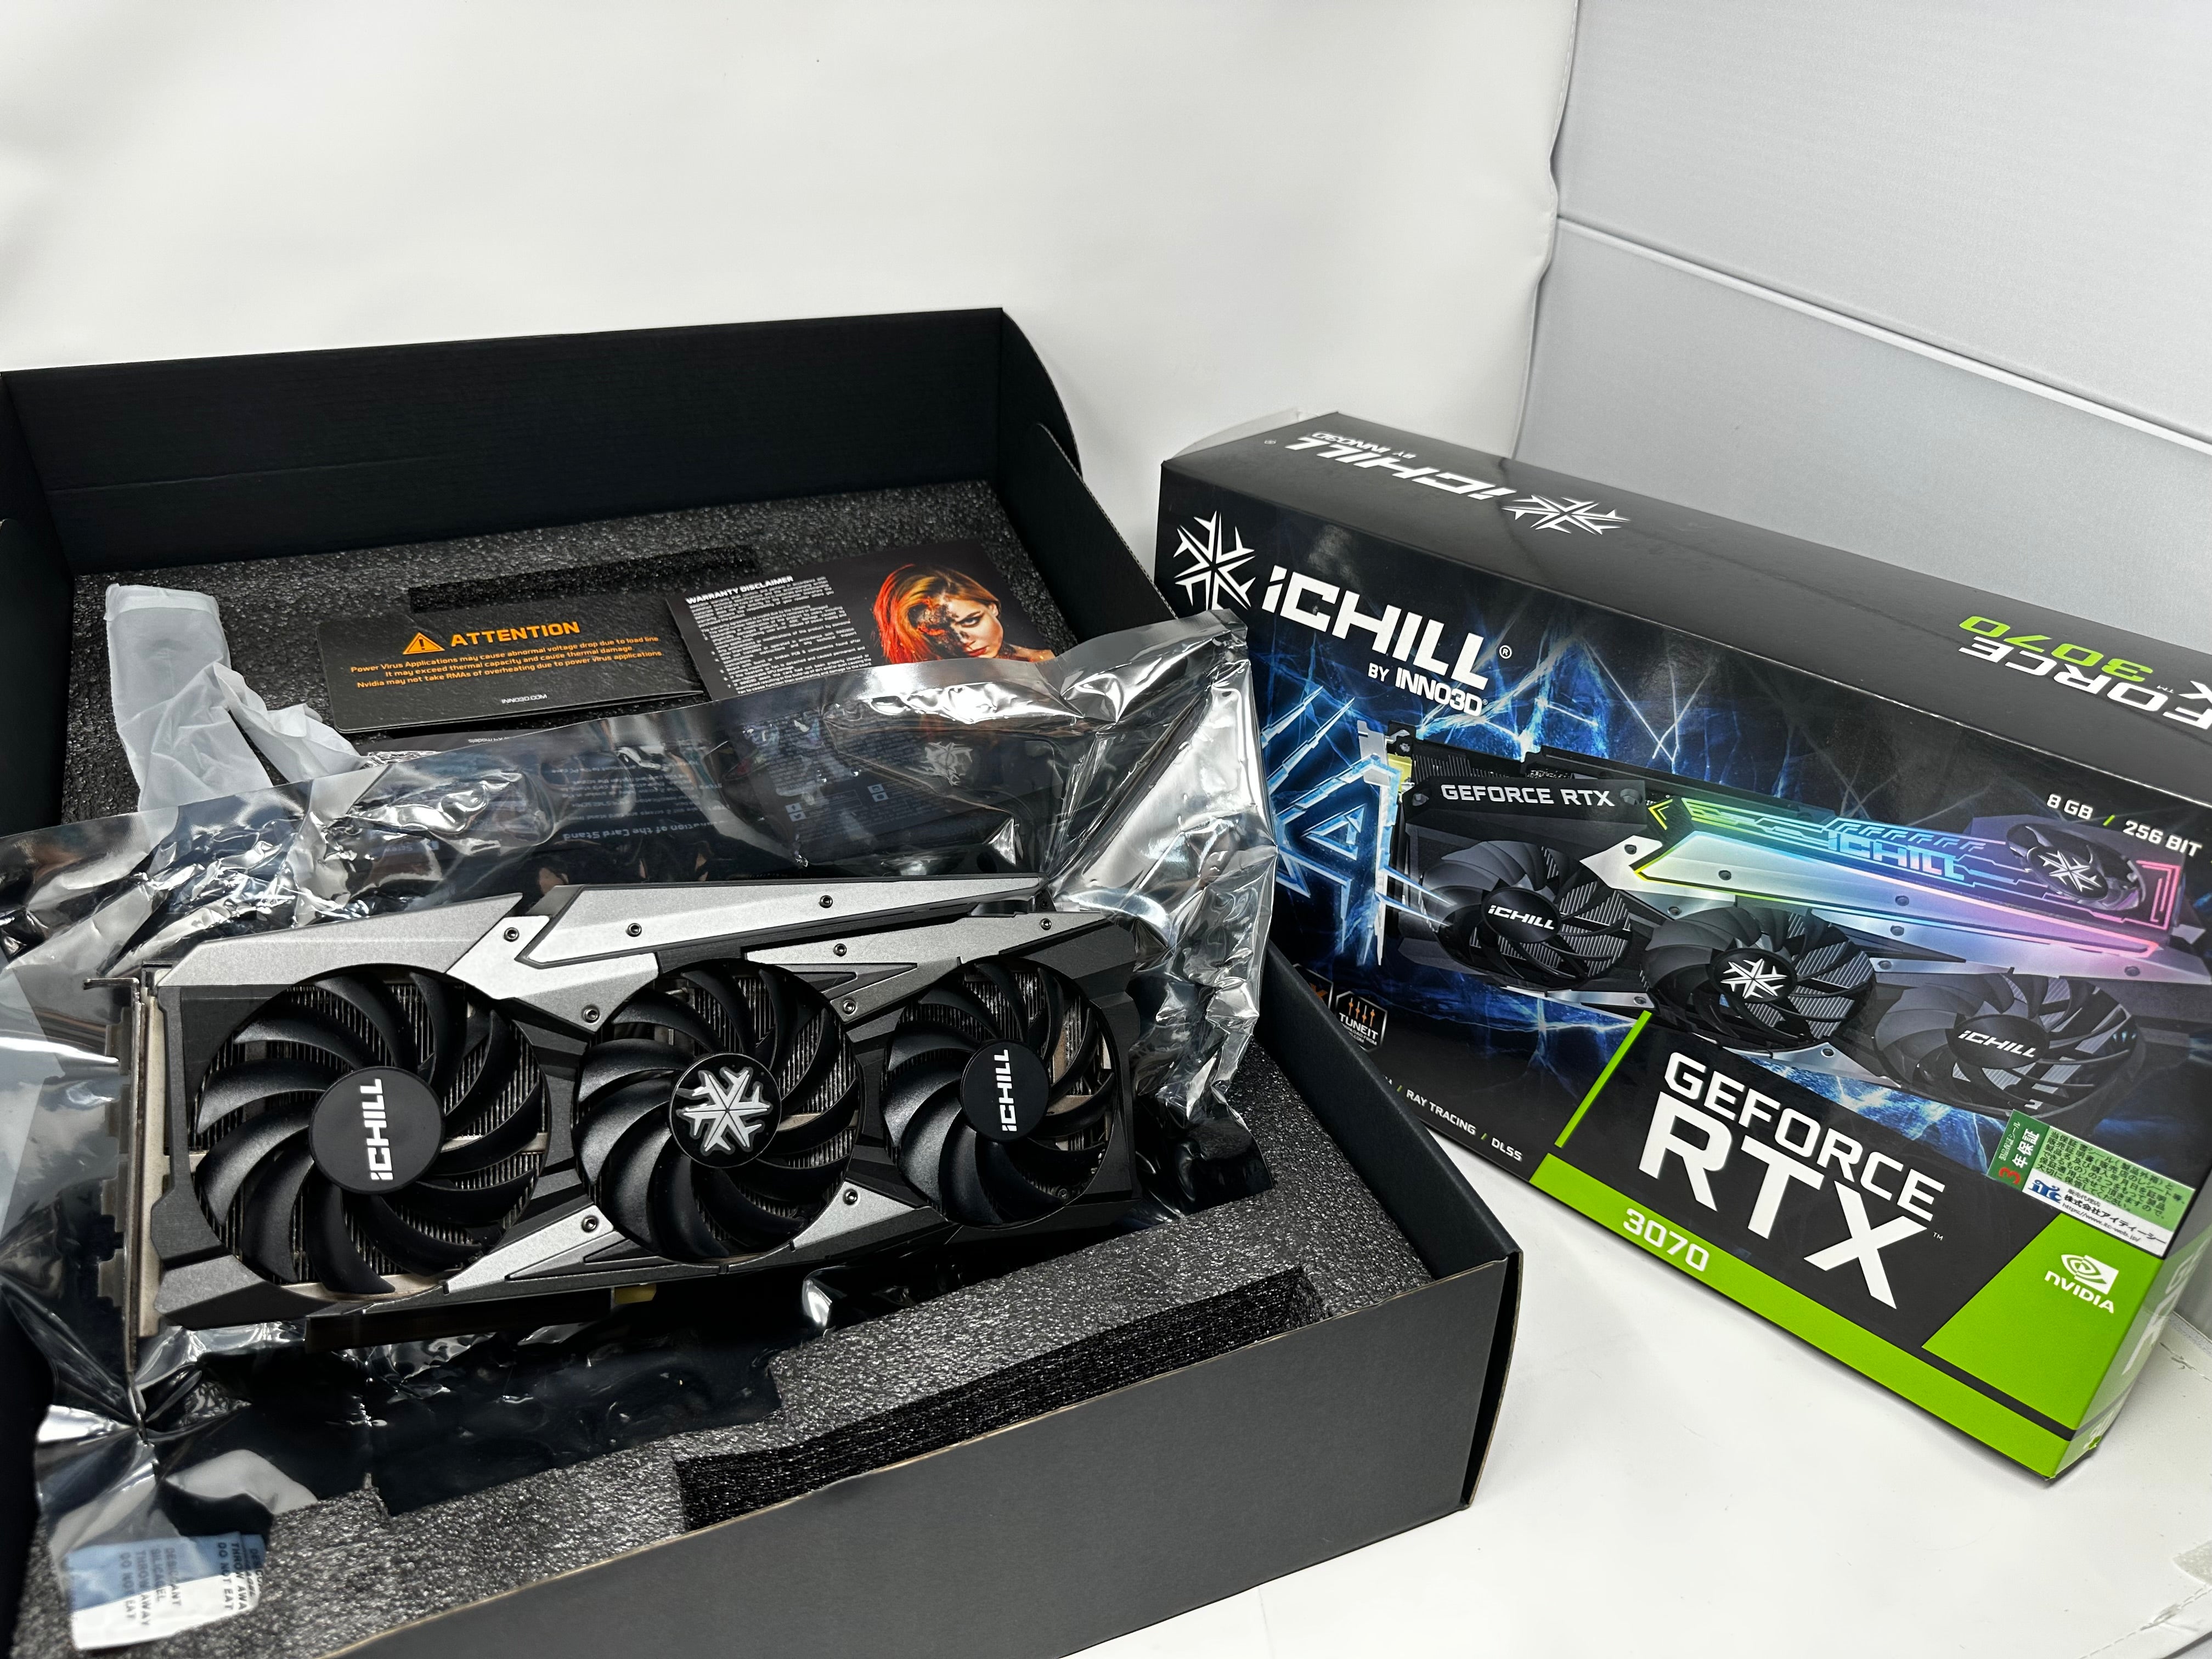 【非LHR】INNO3D GeForce RTX 3070 iChiLL X4